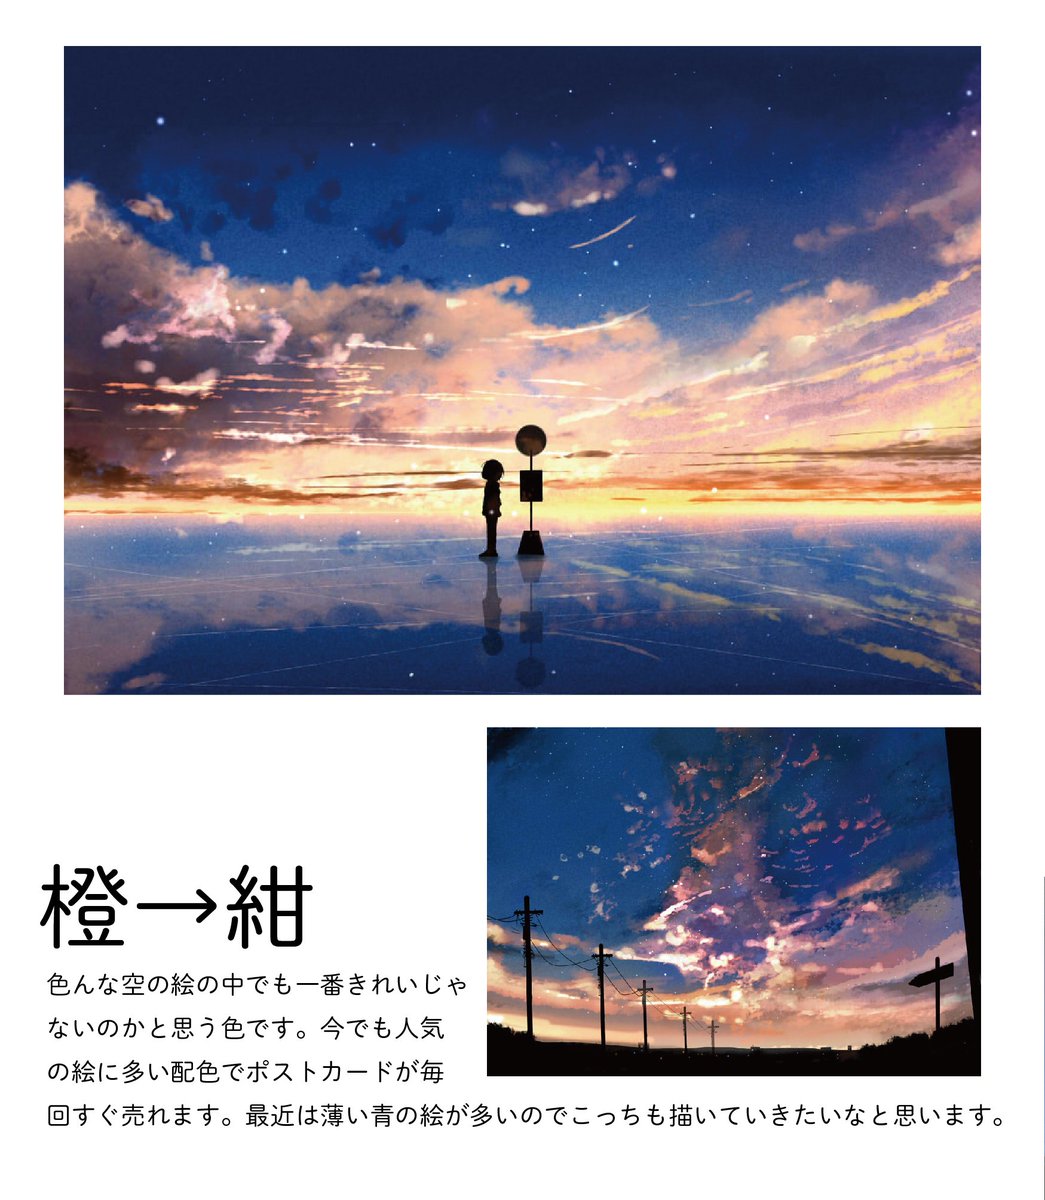 桜田千尋 7月日満月珈琲店画集発売 自分の夕焼けのイラストを色ごとに分けてみました 夕焼けイラストは変化する空 のグラデーション作るのが楽しいです 好きな空の色 ありますか 今後のグッズなどの参考にします